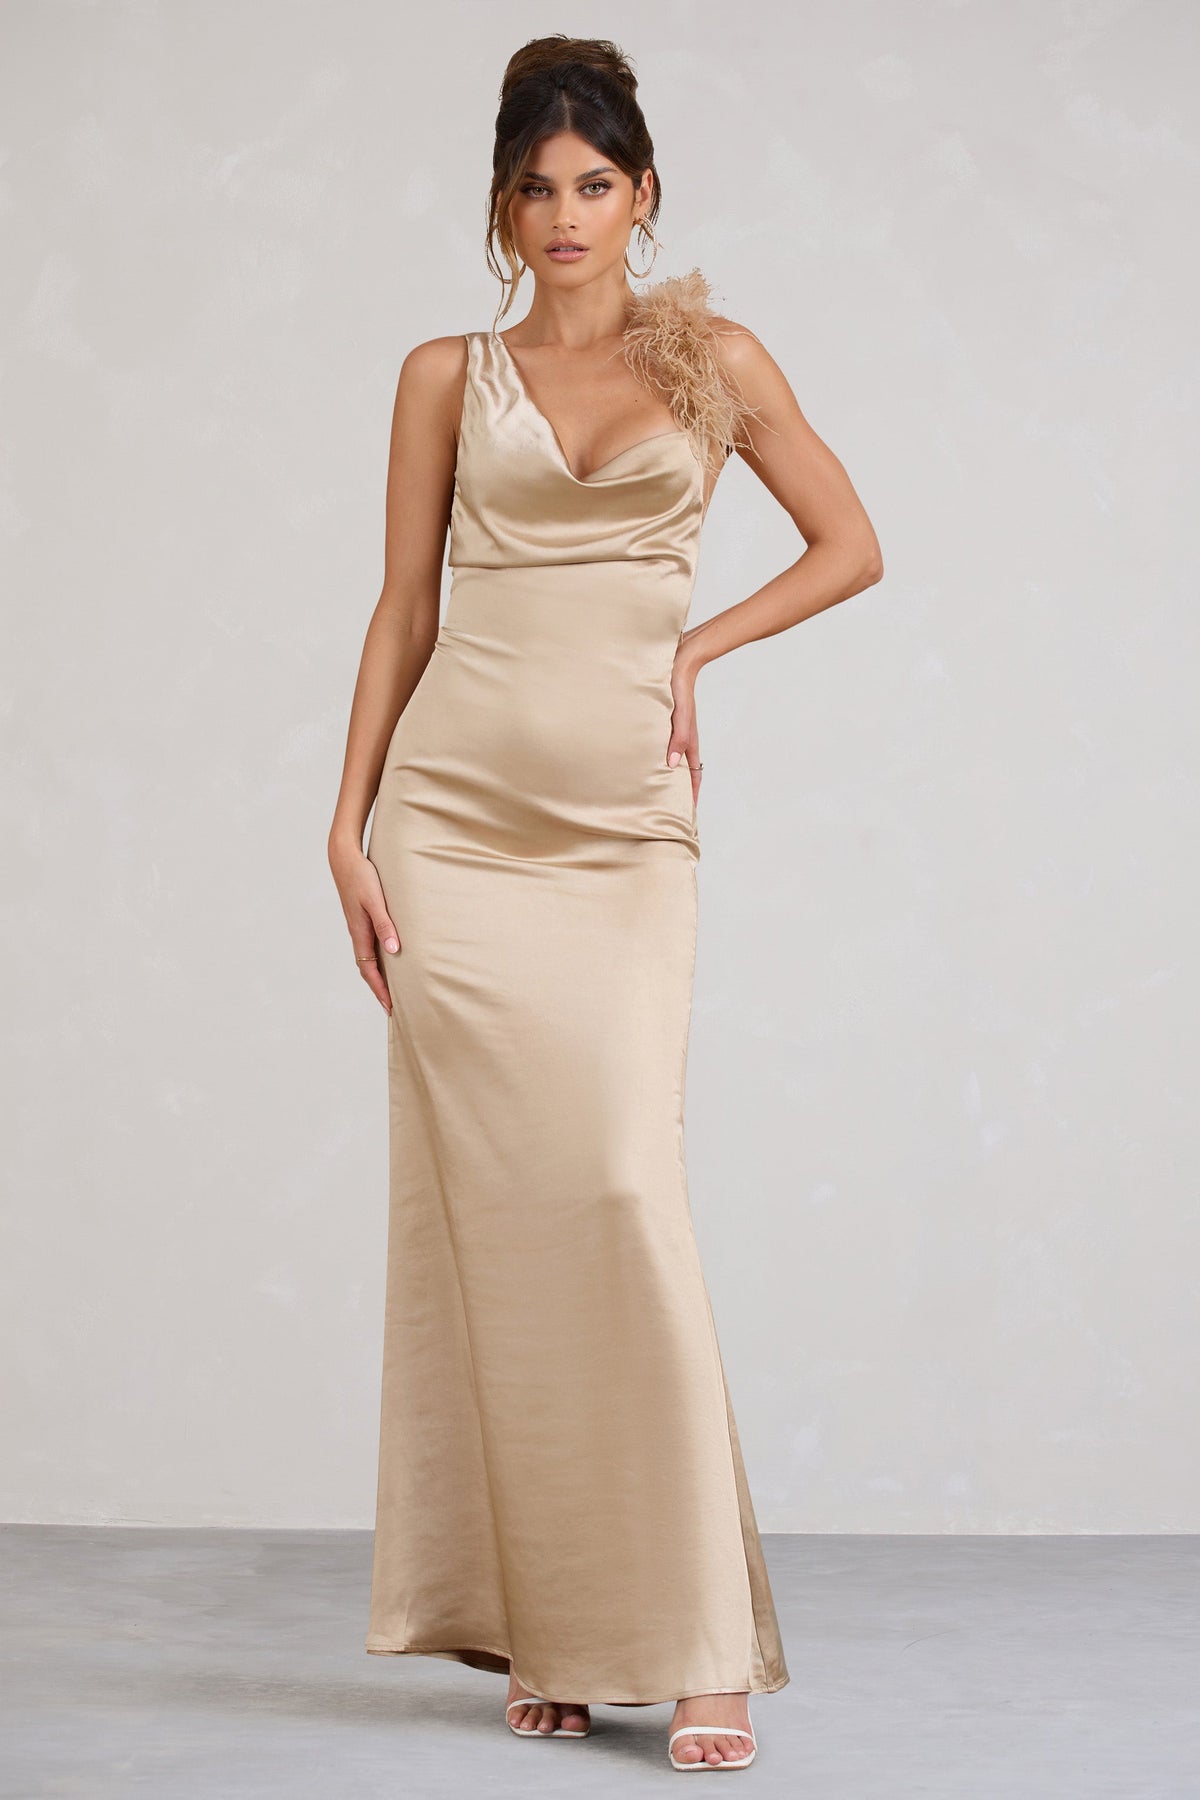 Buy Gold Satin Cami Slip Dress 22, Dresses